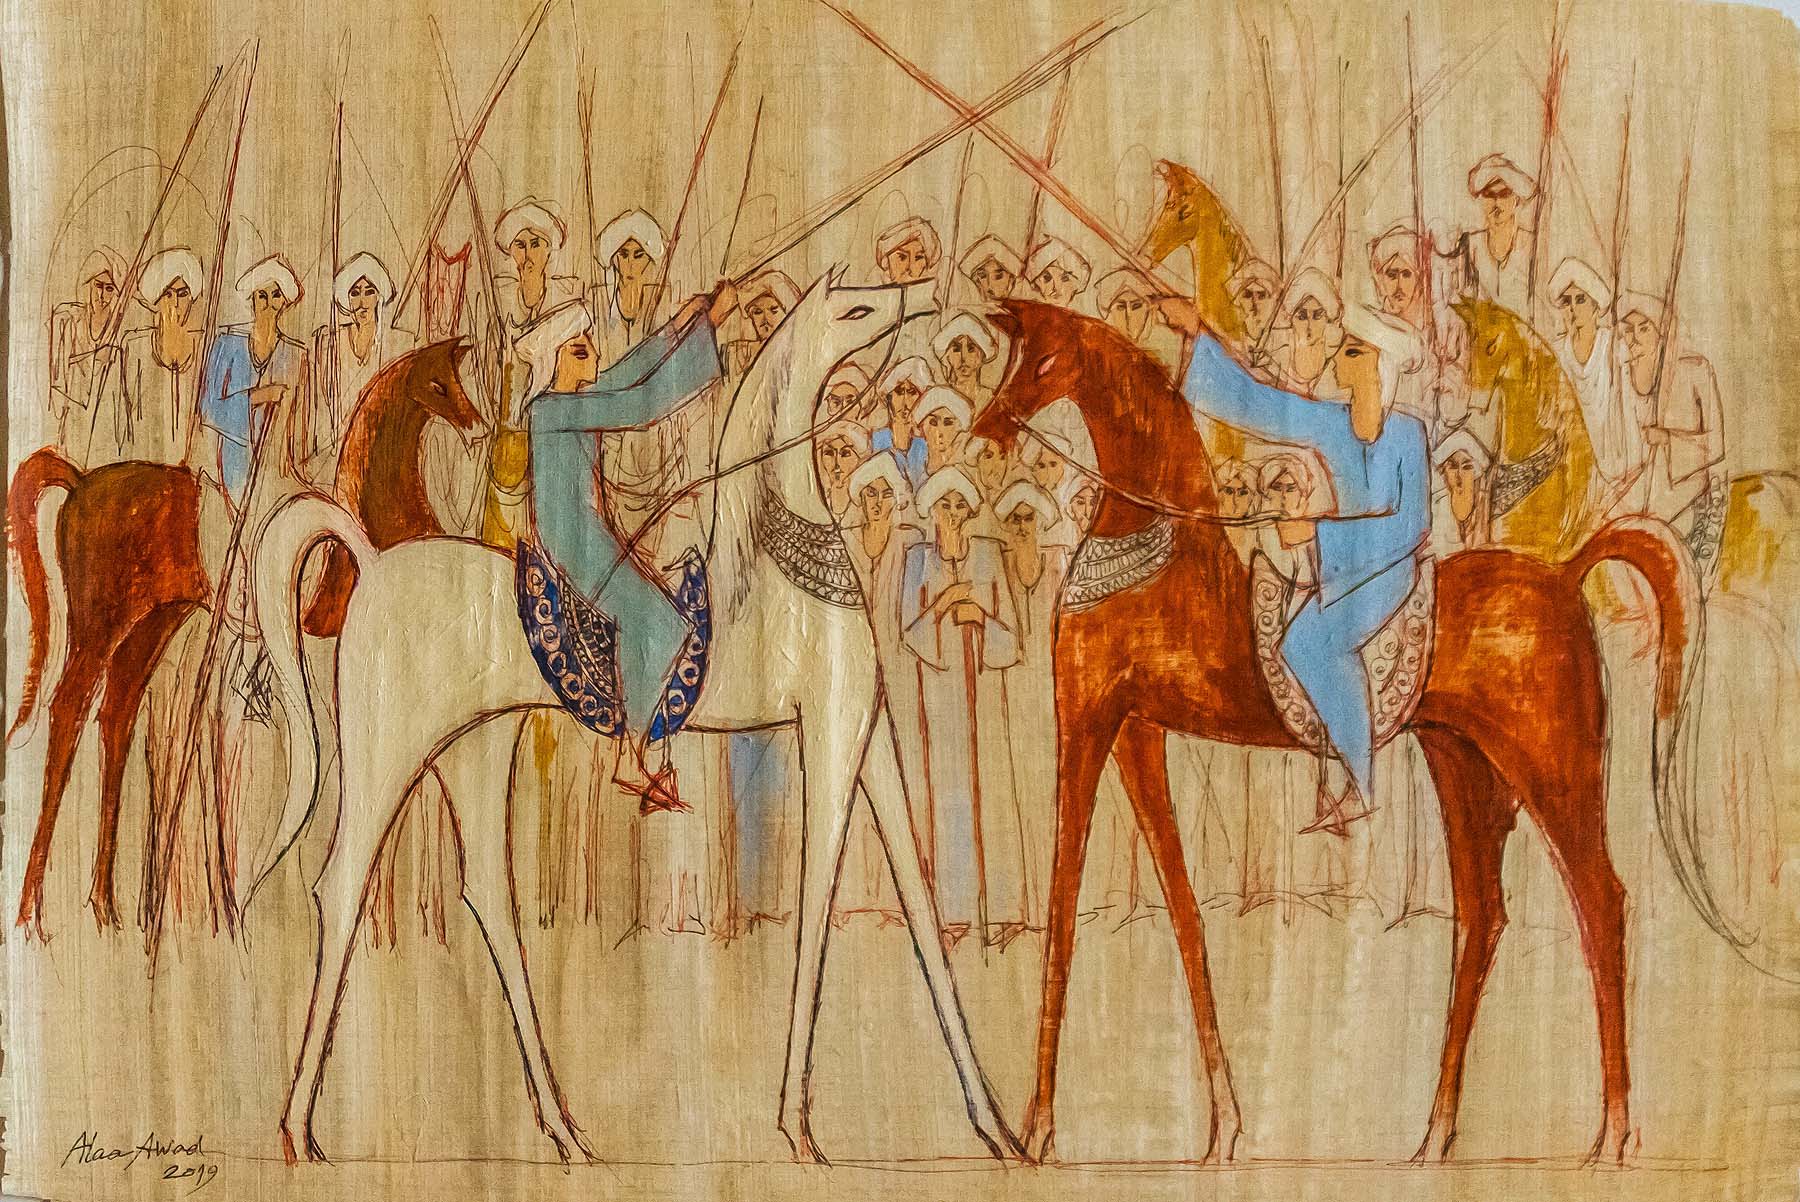 alaa awad - the artist - علاء عوض - painting on Papyrus